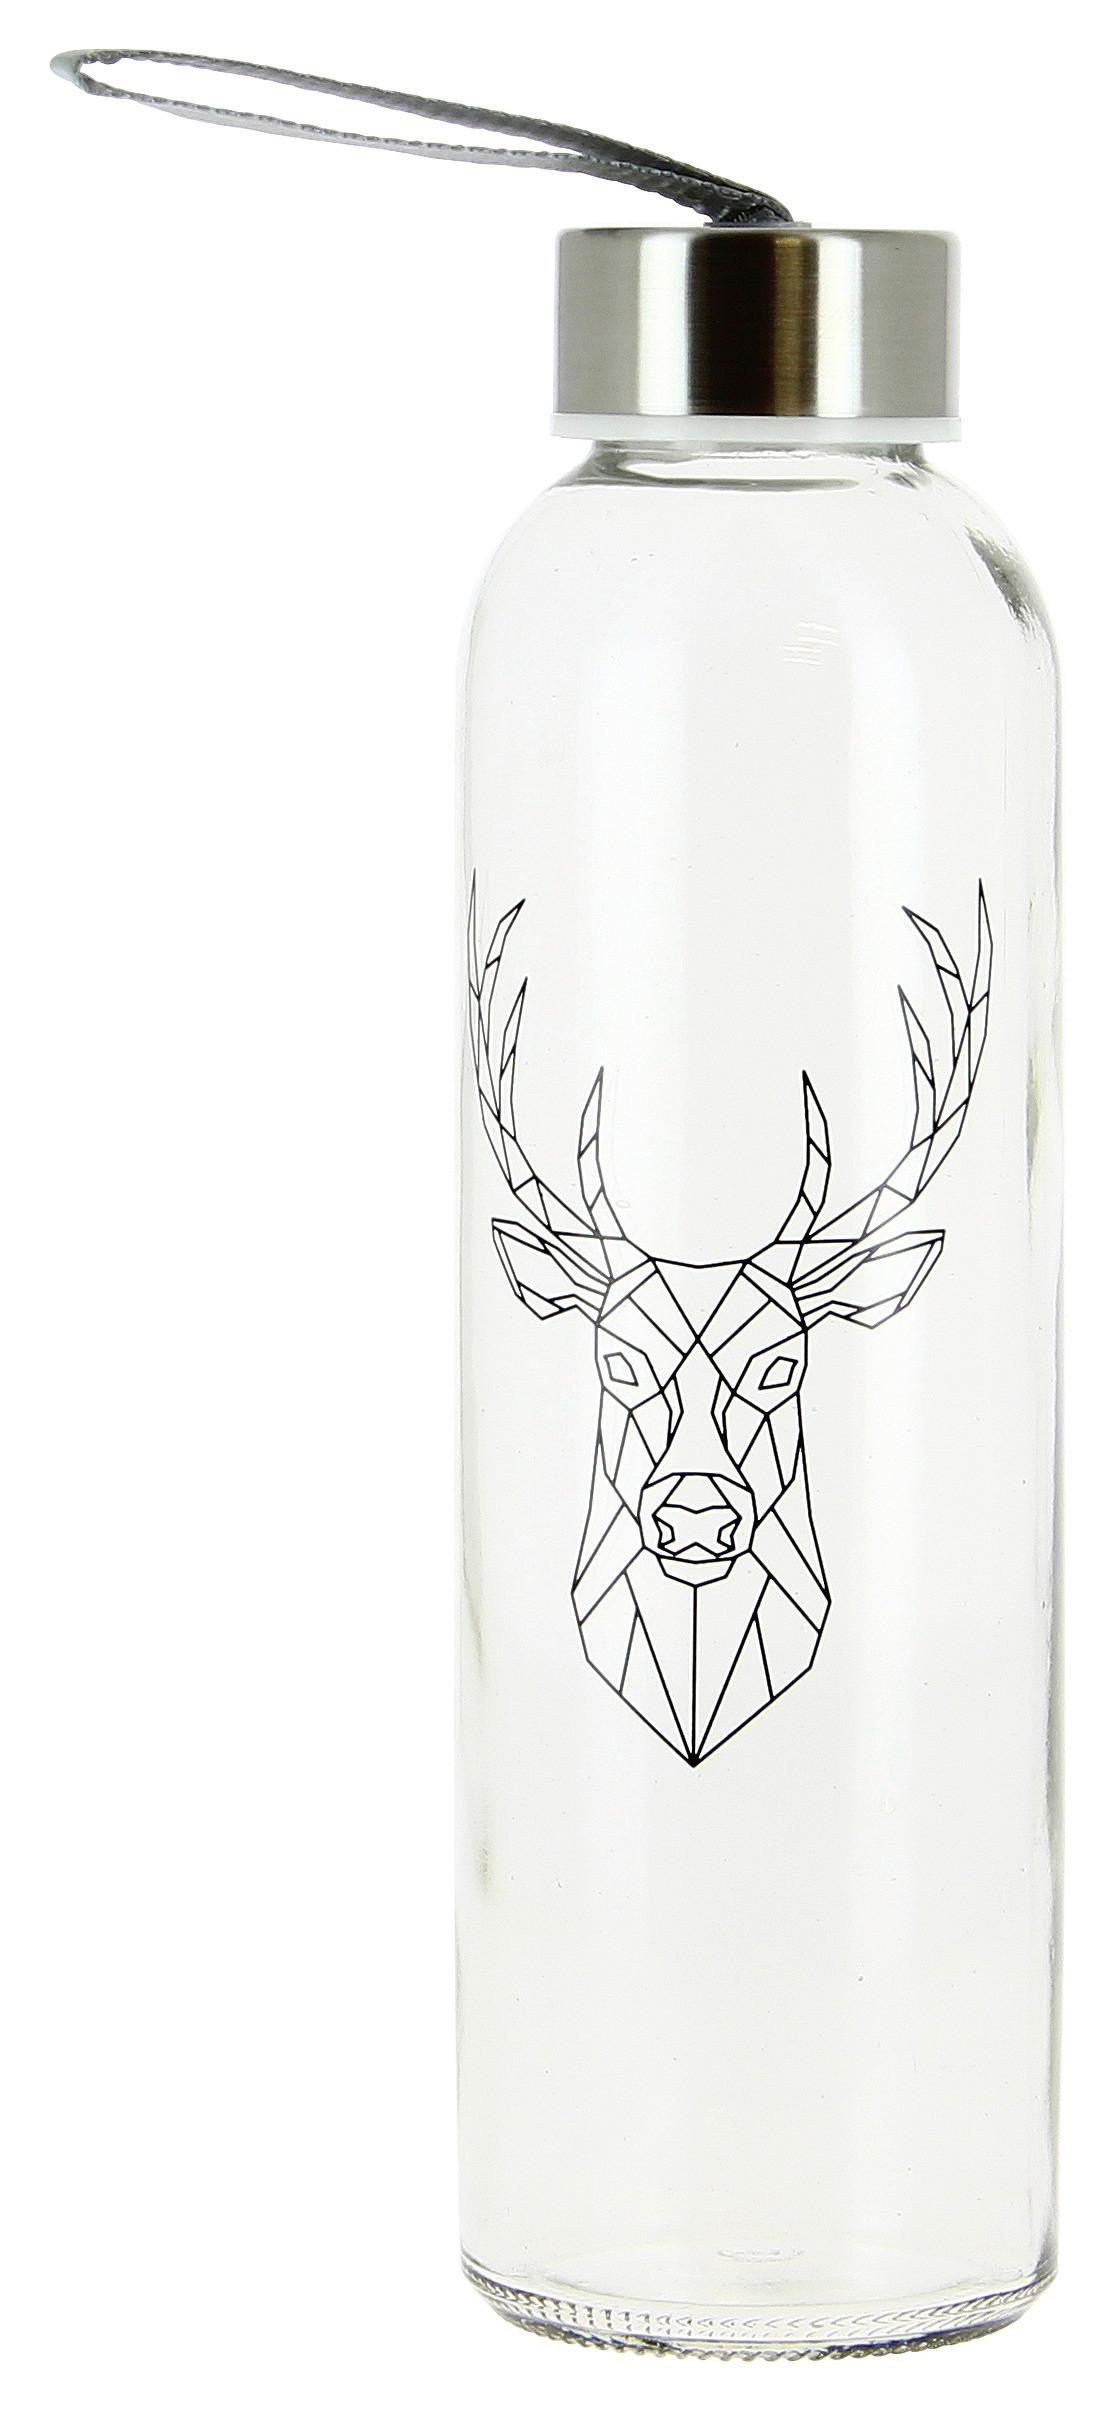 Trinkflasche mit Hirschdekor Taylor, ca. 500 ml - Klar/Schwarz, KONVENTIONELL, Glas/Kunststoff (6,4/21,7cm) - Luca Bessoni